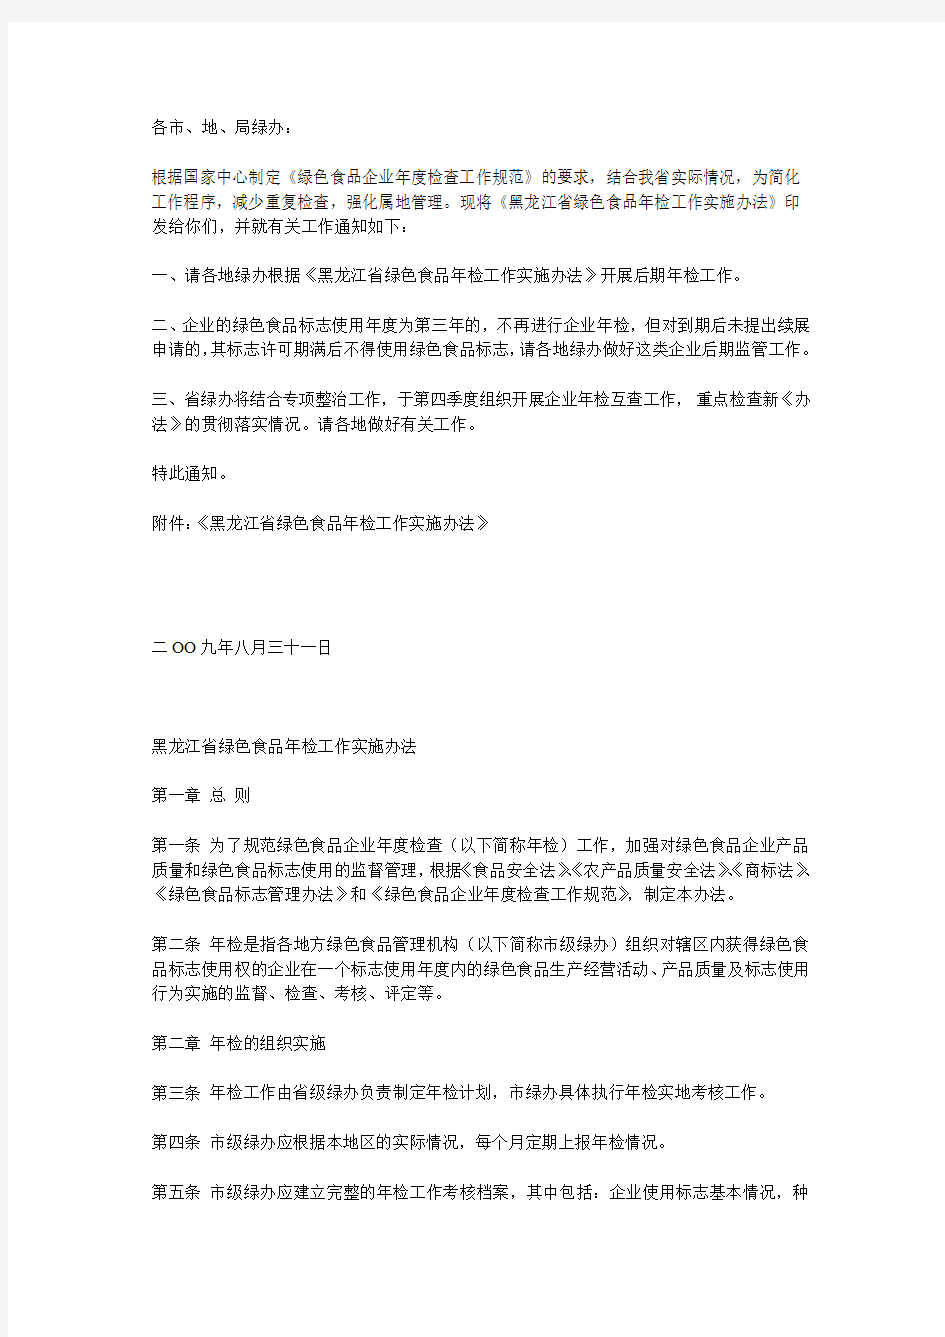 黑龙江省绿色食品年检工作实施办法